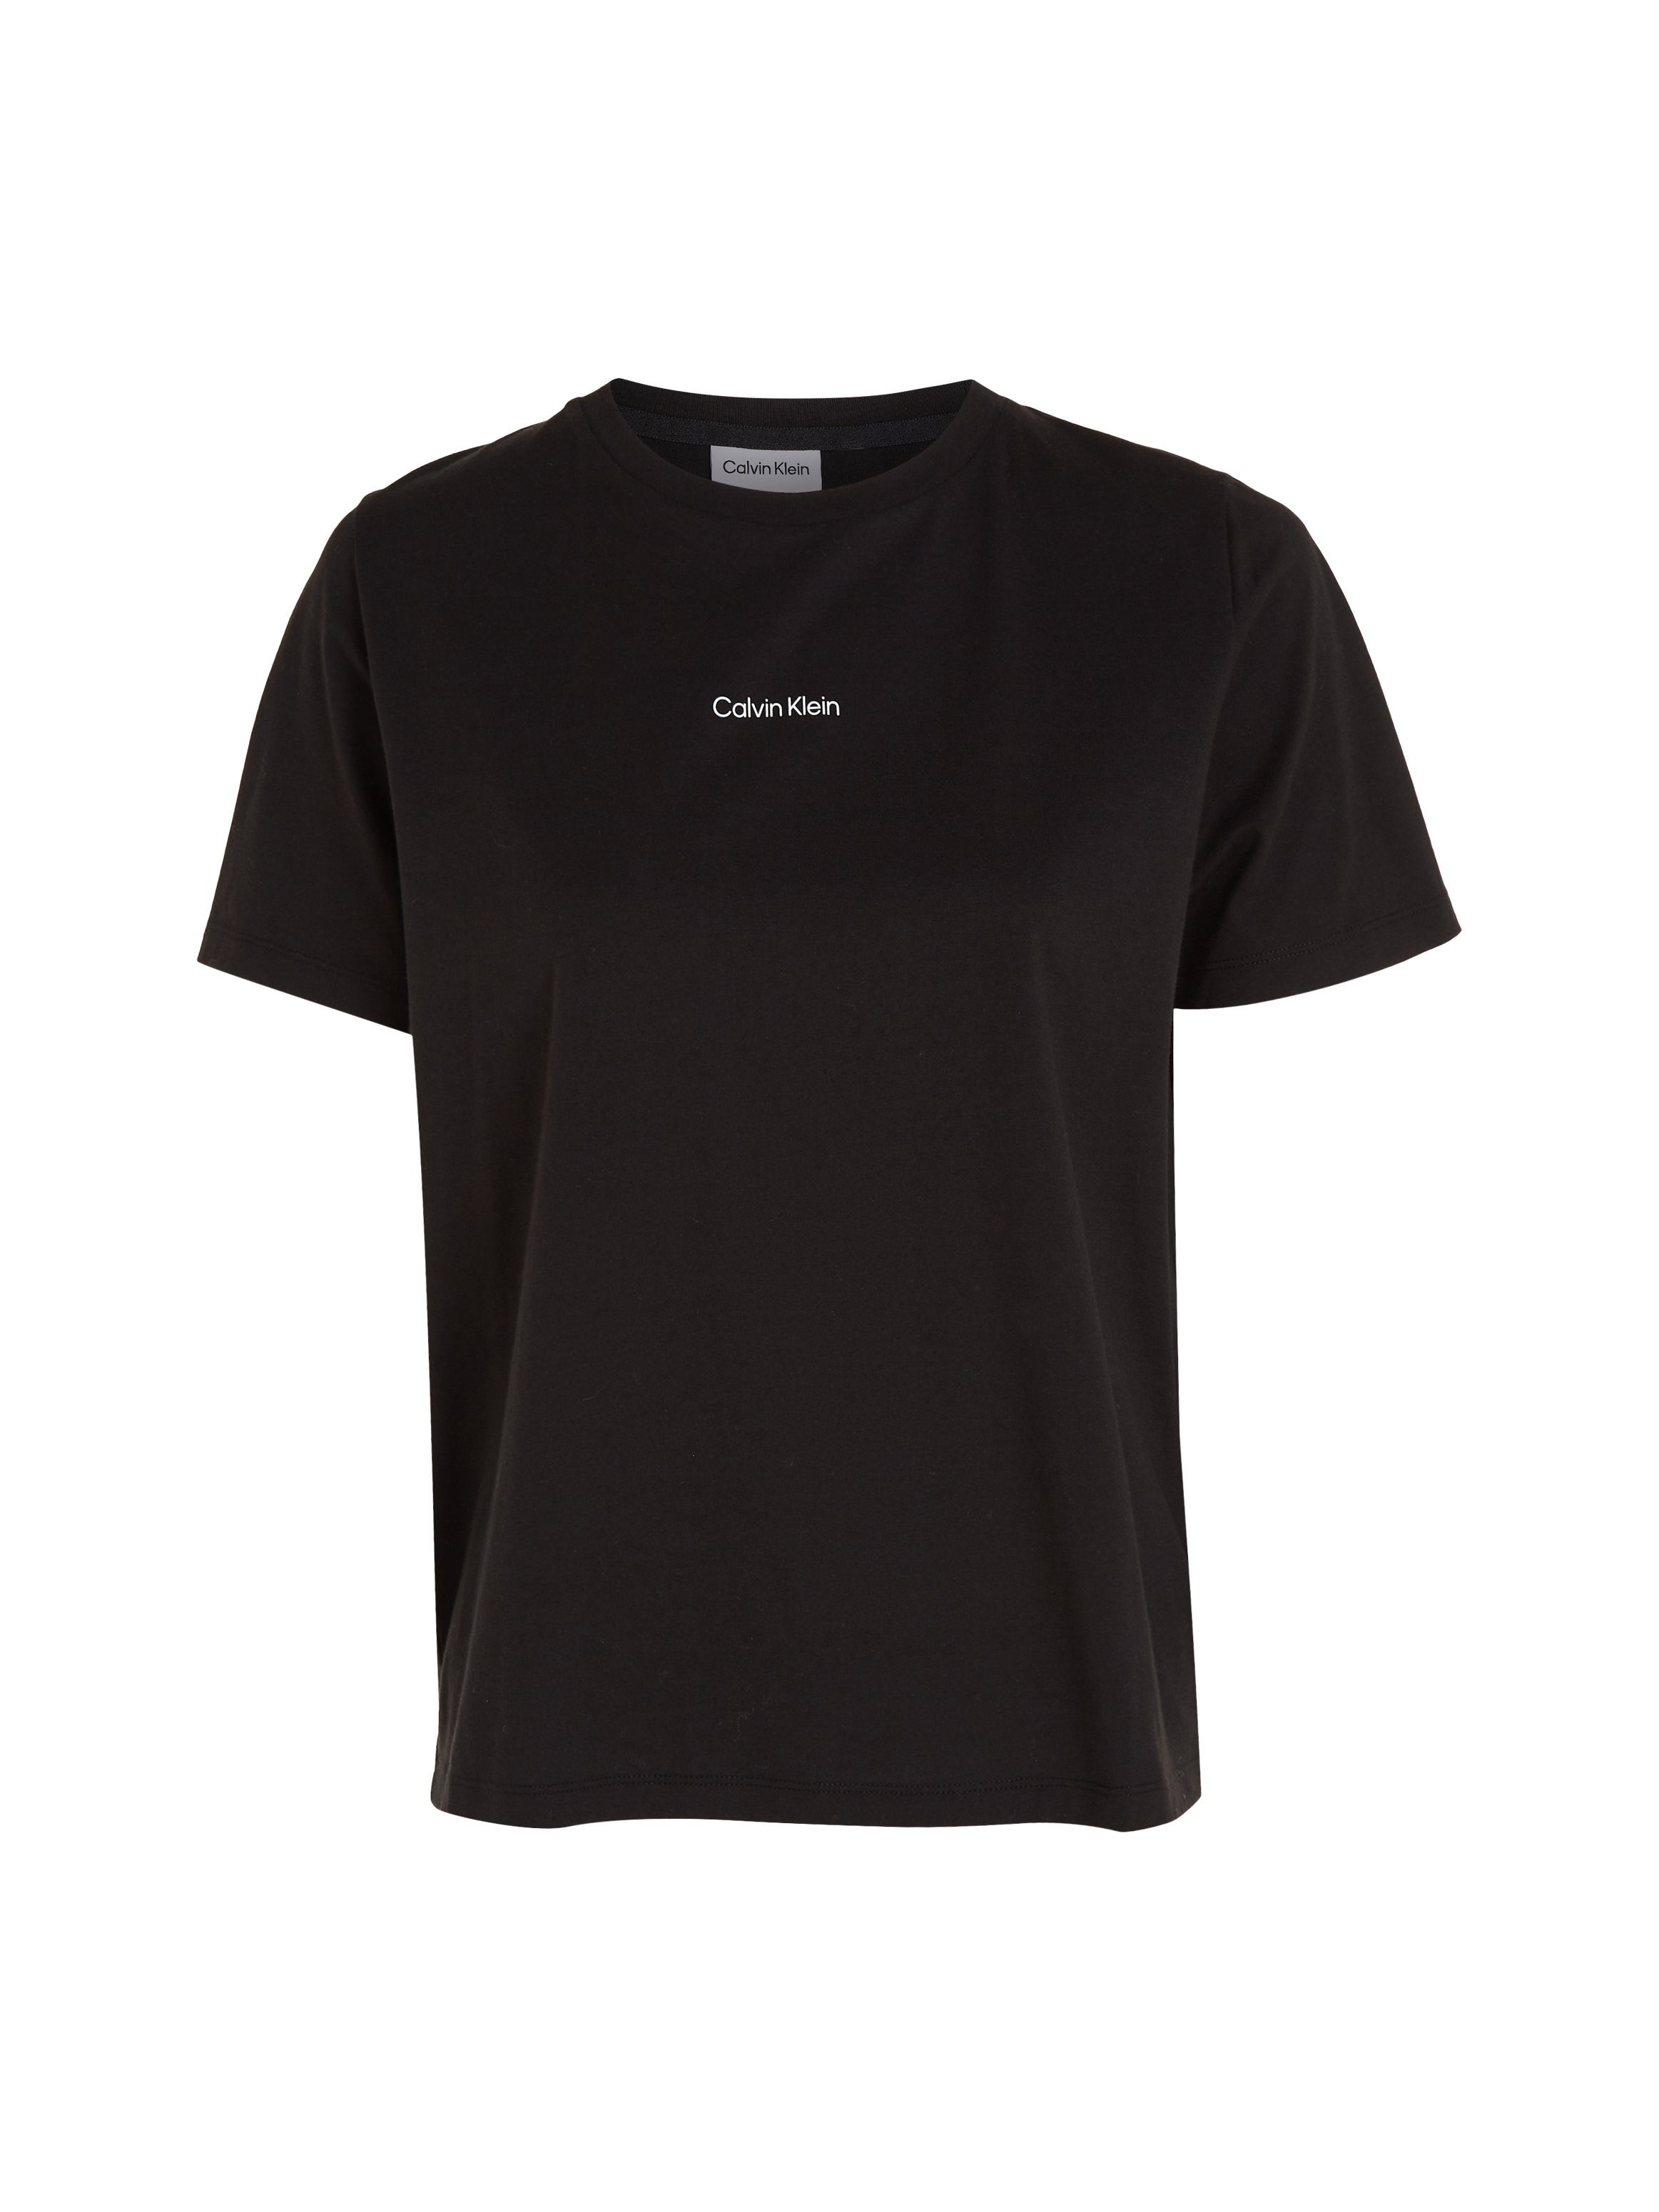 Klein reiner T-SHIRT LOGO T-Shirt Ck-Black Calvin aus MICRO Baumwolle